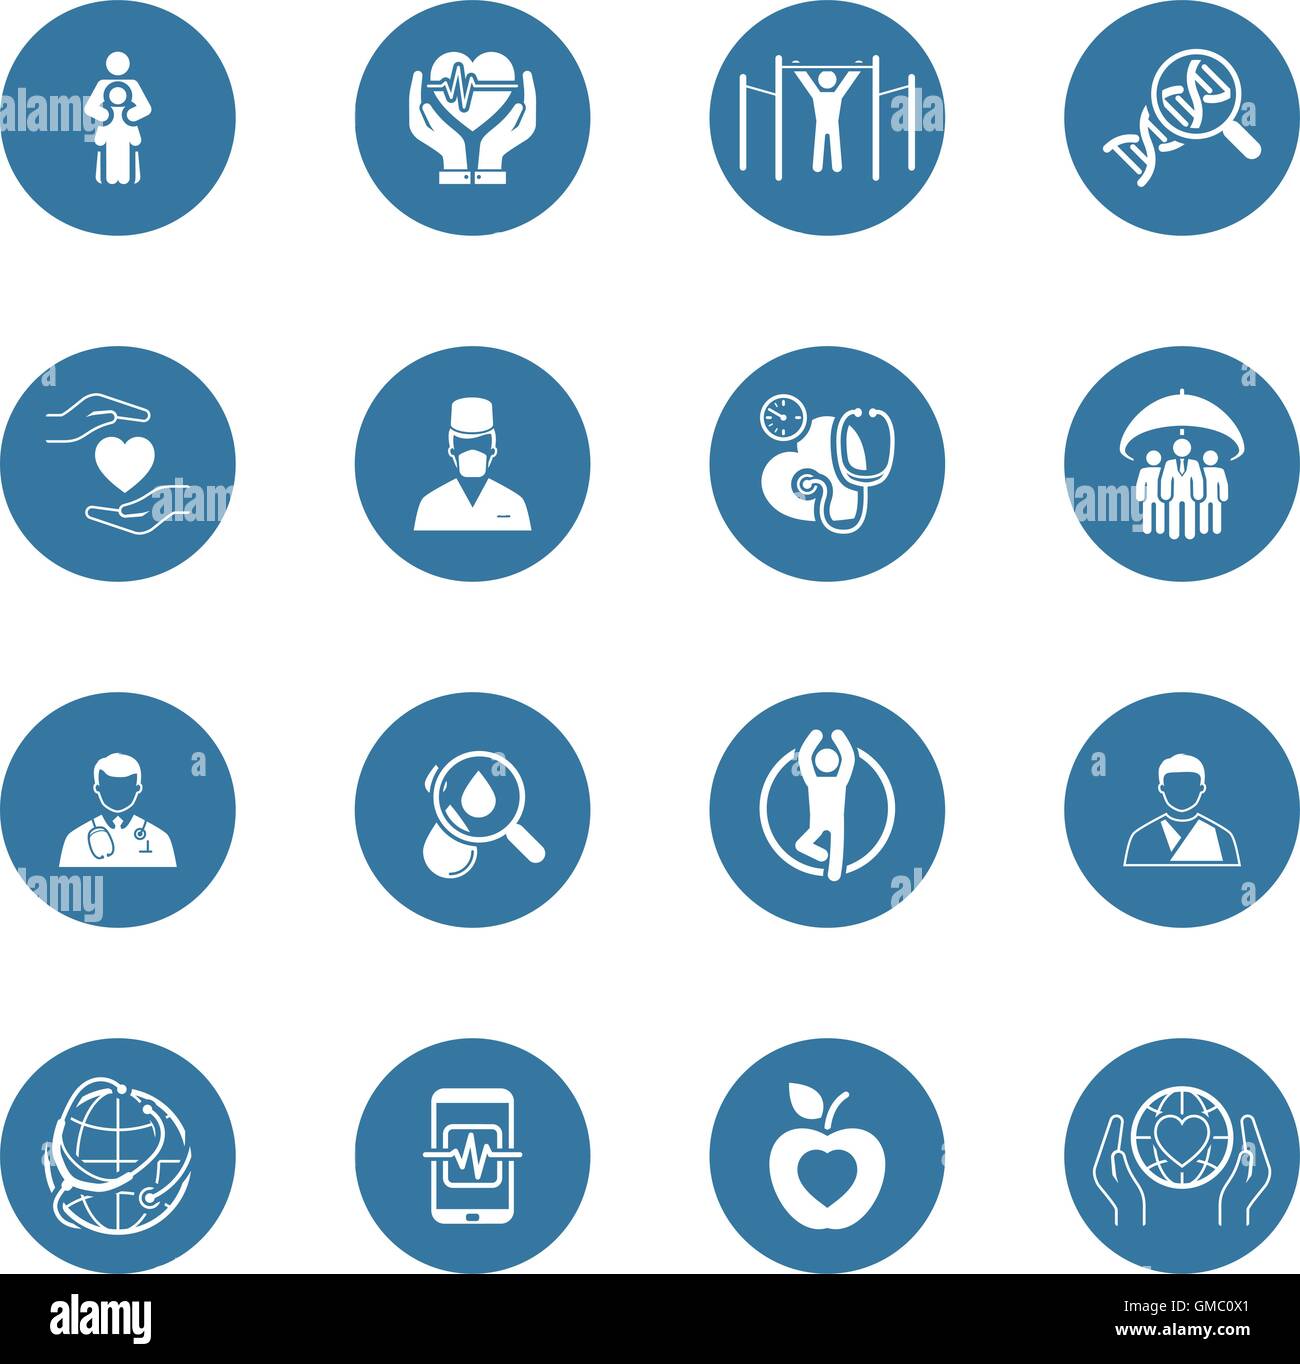 Medizin und Gesundheitswesen Icons Set. Flaches Design. Stock Vektor